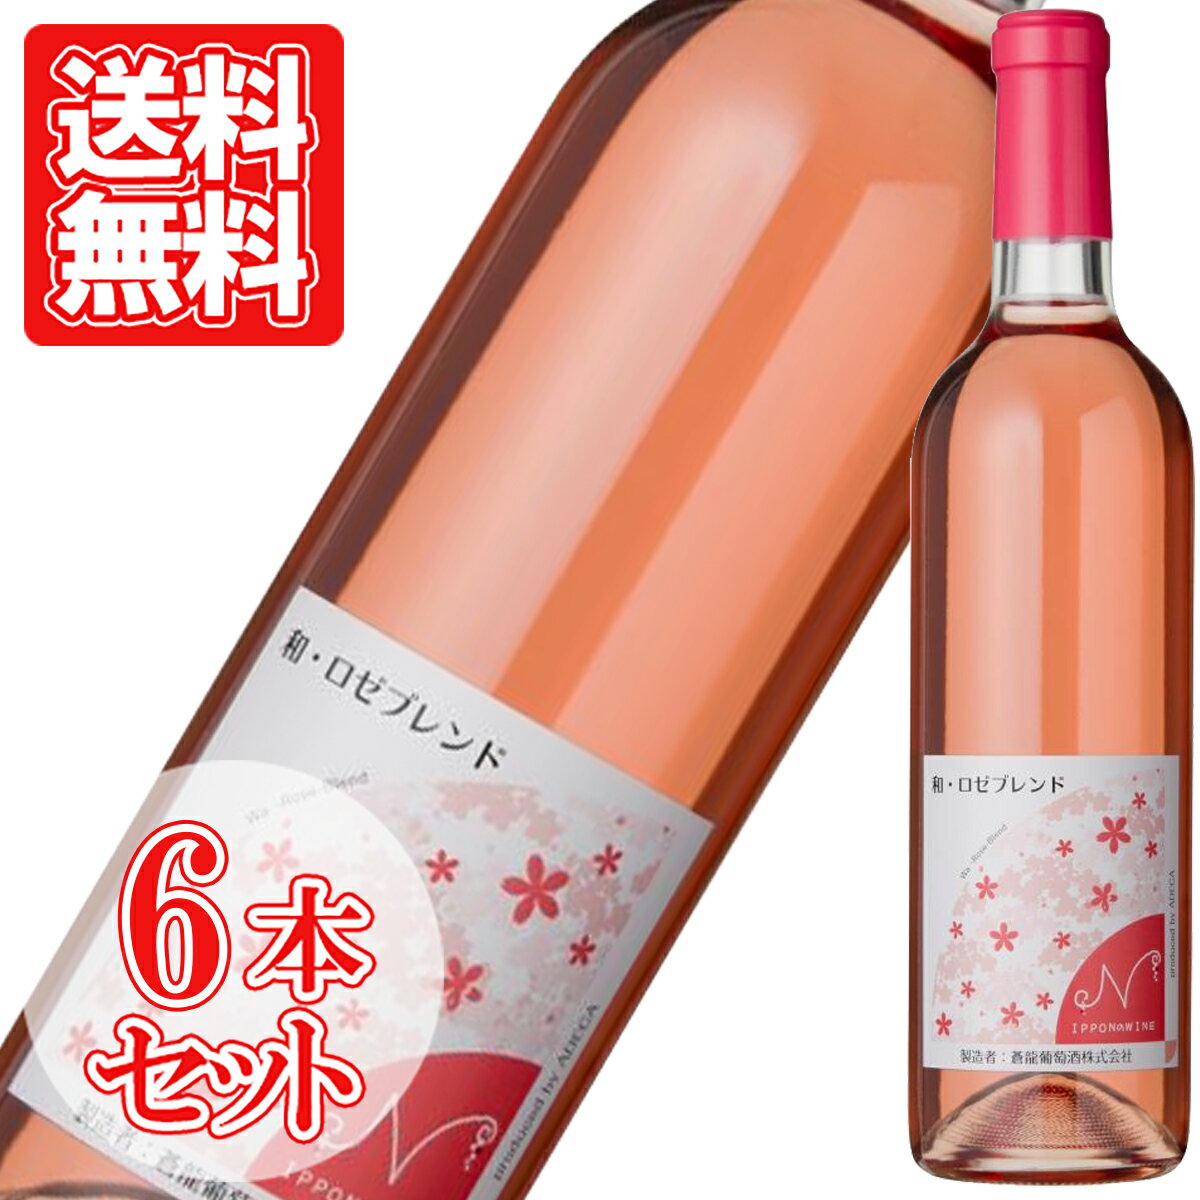 日本産の赤ブドウと白ブドウを使用。野イチゴやサクランボの香りの後に優しい花の香り。 凝縮感のあるベリー系のスッキリとした酸味と、ほんのり感じる甘みのバランスが整った、 やや辛口の味わい。 ブイヤベースなどの魚介料理と合わせて、良く冷やしてお飲みください。 Adeca Wa-Rose Blend アルコール度数：12% 内容量：720ml ギフト用途：誕生日 内祝 内祝い お返し 結婚 出産 結婚内祝い 出産内祝い 結婚引出物 新築内祝い 長寿祝い ご挨拶 父の日 ハロウィン